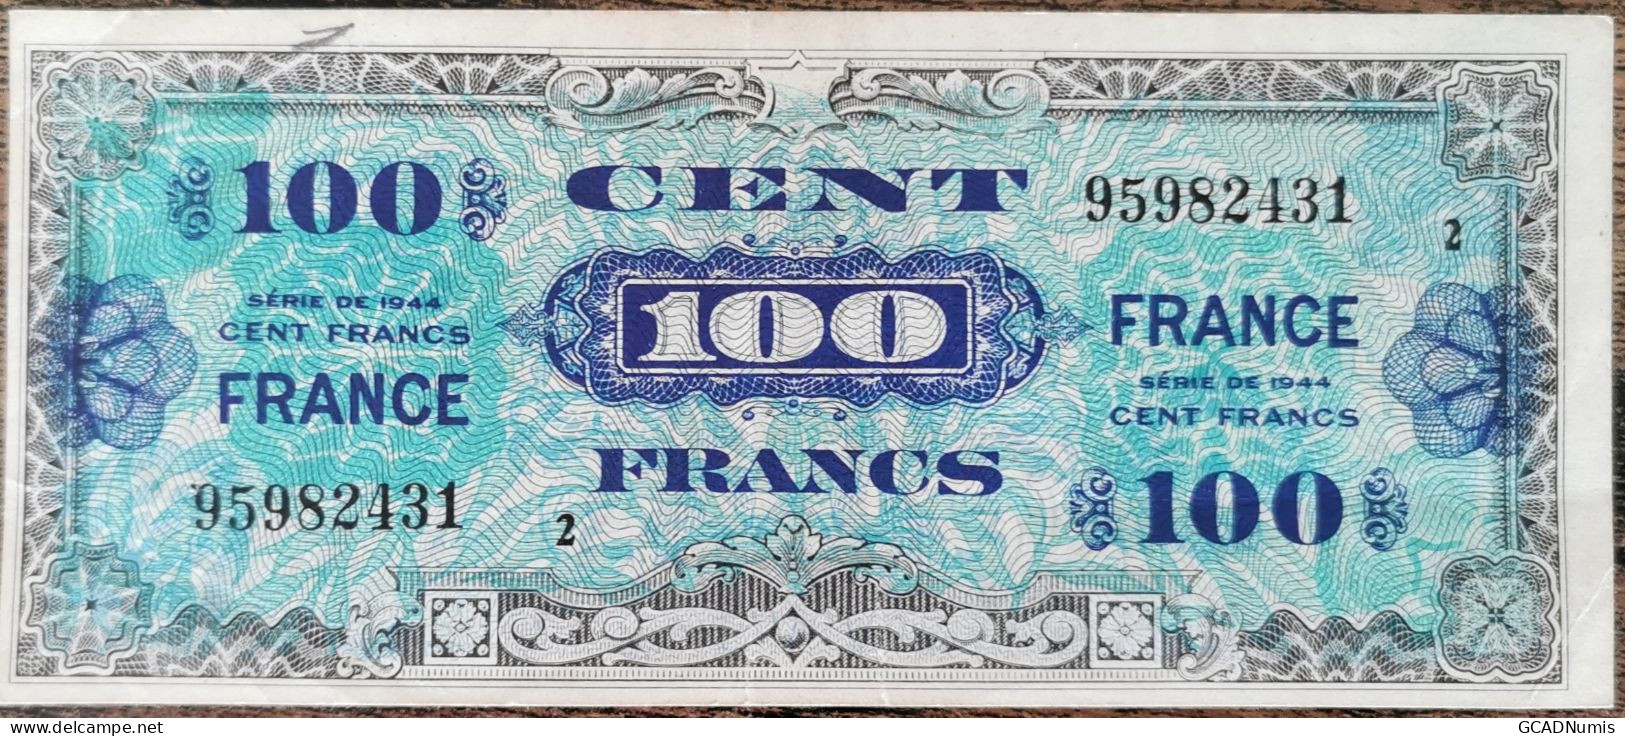 Billet 100 Francs 1944 FRANCE Préparer Par Les USA Pour La Libération Série 2 - 1944 Bandiera/Francia